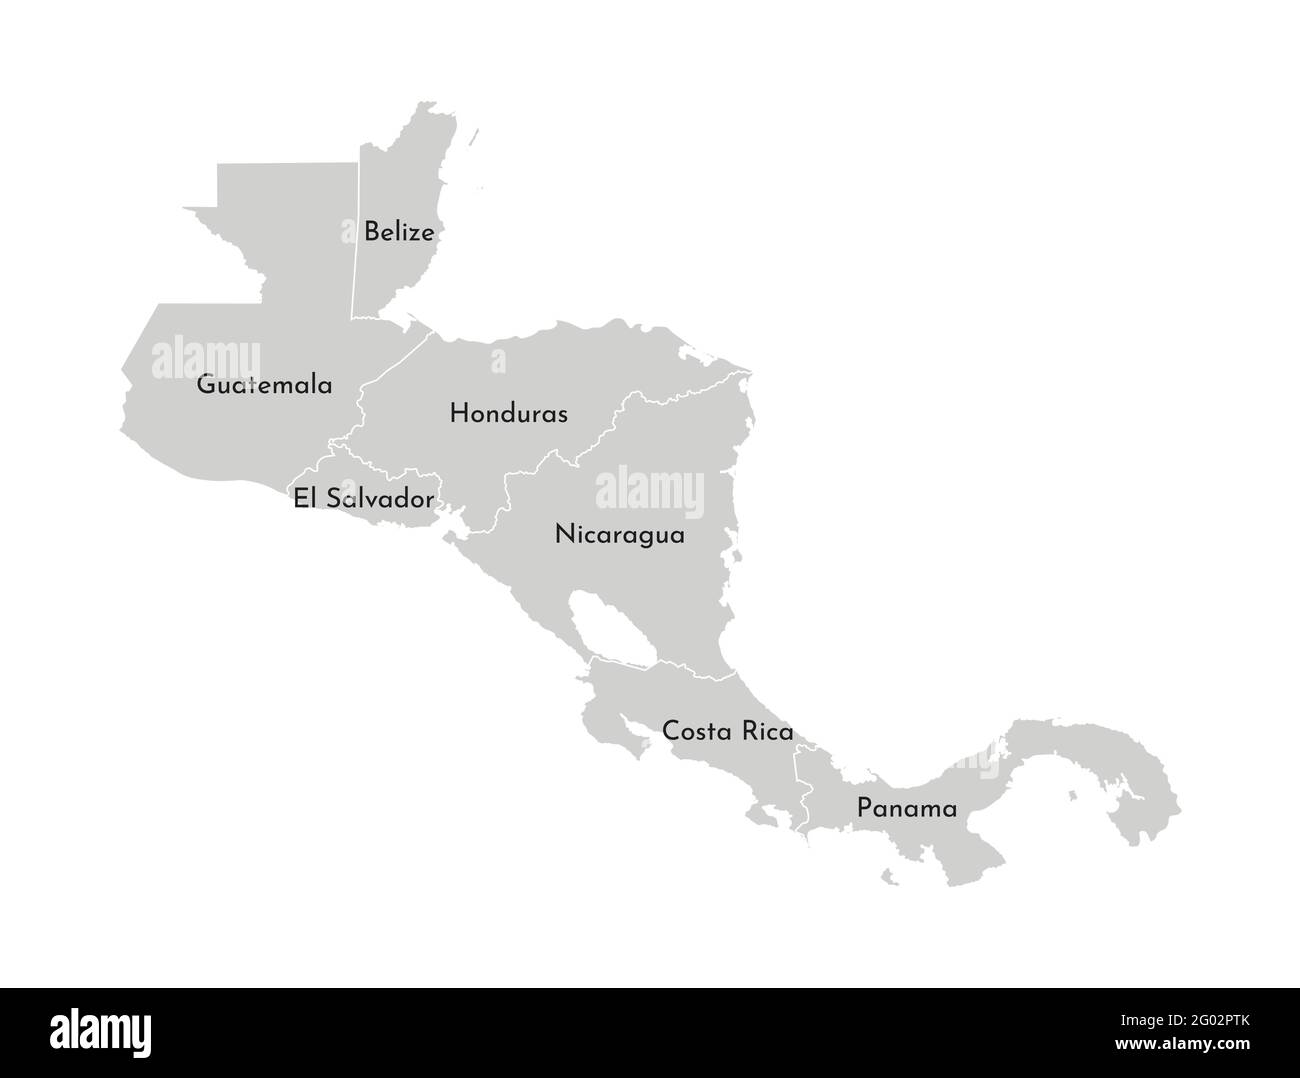 Illustrazione vettoriale con mappa semplificata della regione dell'America centrale. Silhouette grigie, contorno bianco dei confini degli stati. Illustrazione Vettoriale